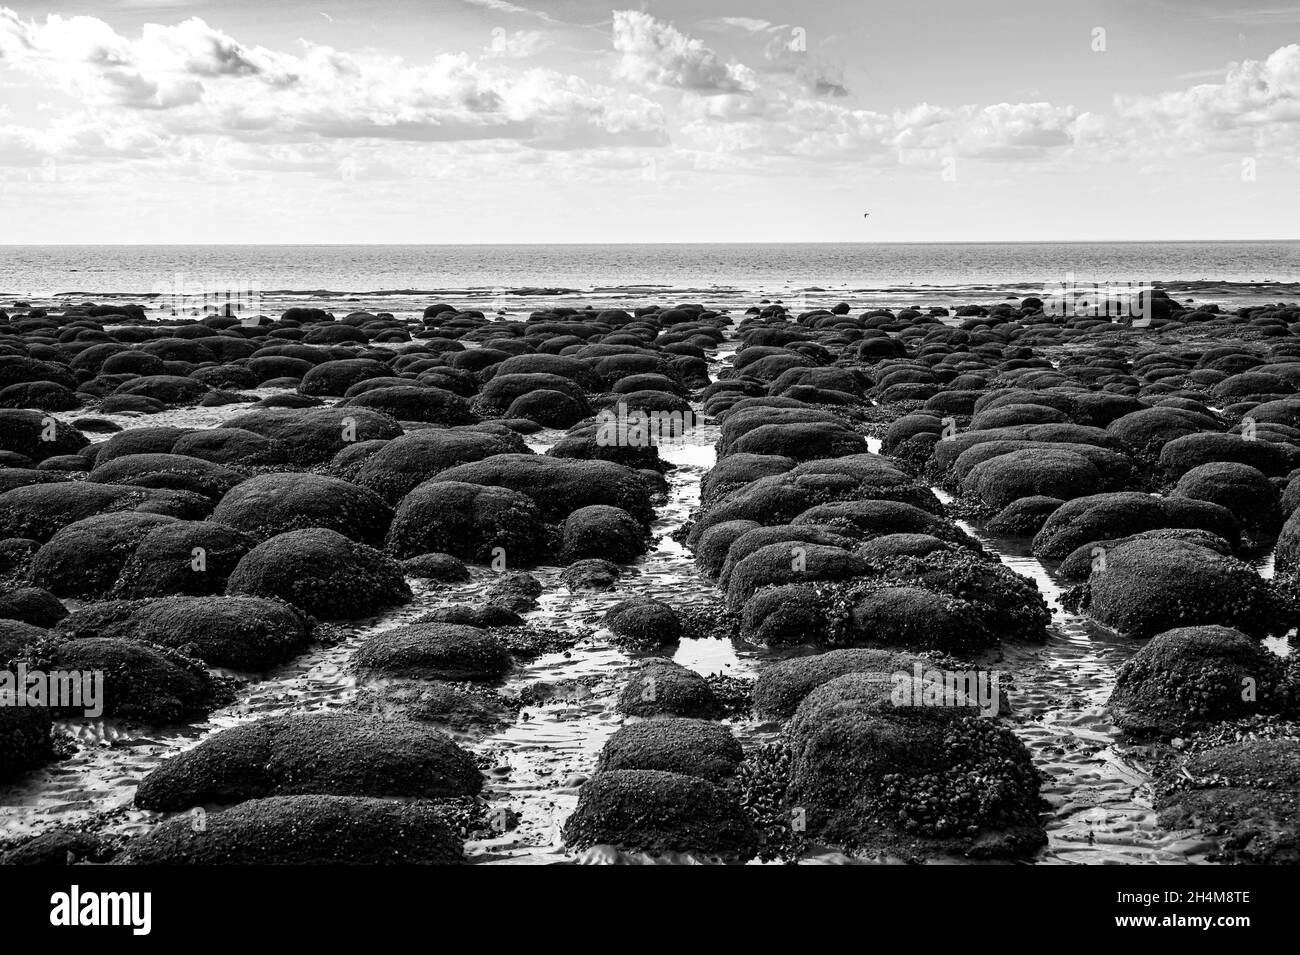 Boulettes ou pierres disposées en lignes droites recouvertes de moules et de barnacles à Hunstanton Beach, Norfolk Banque D'Images